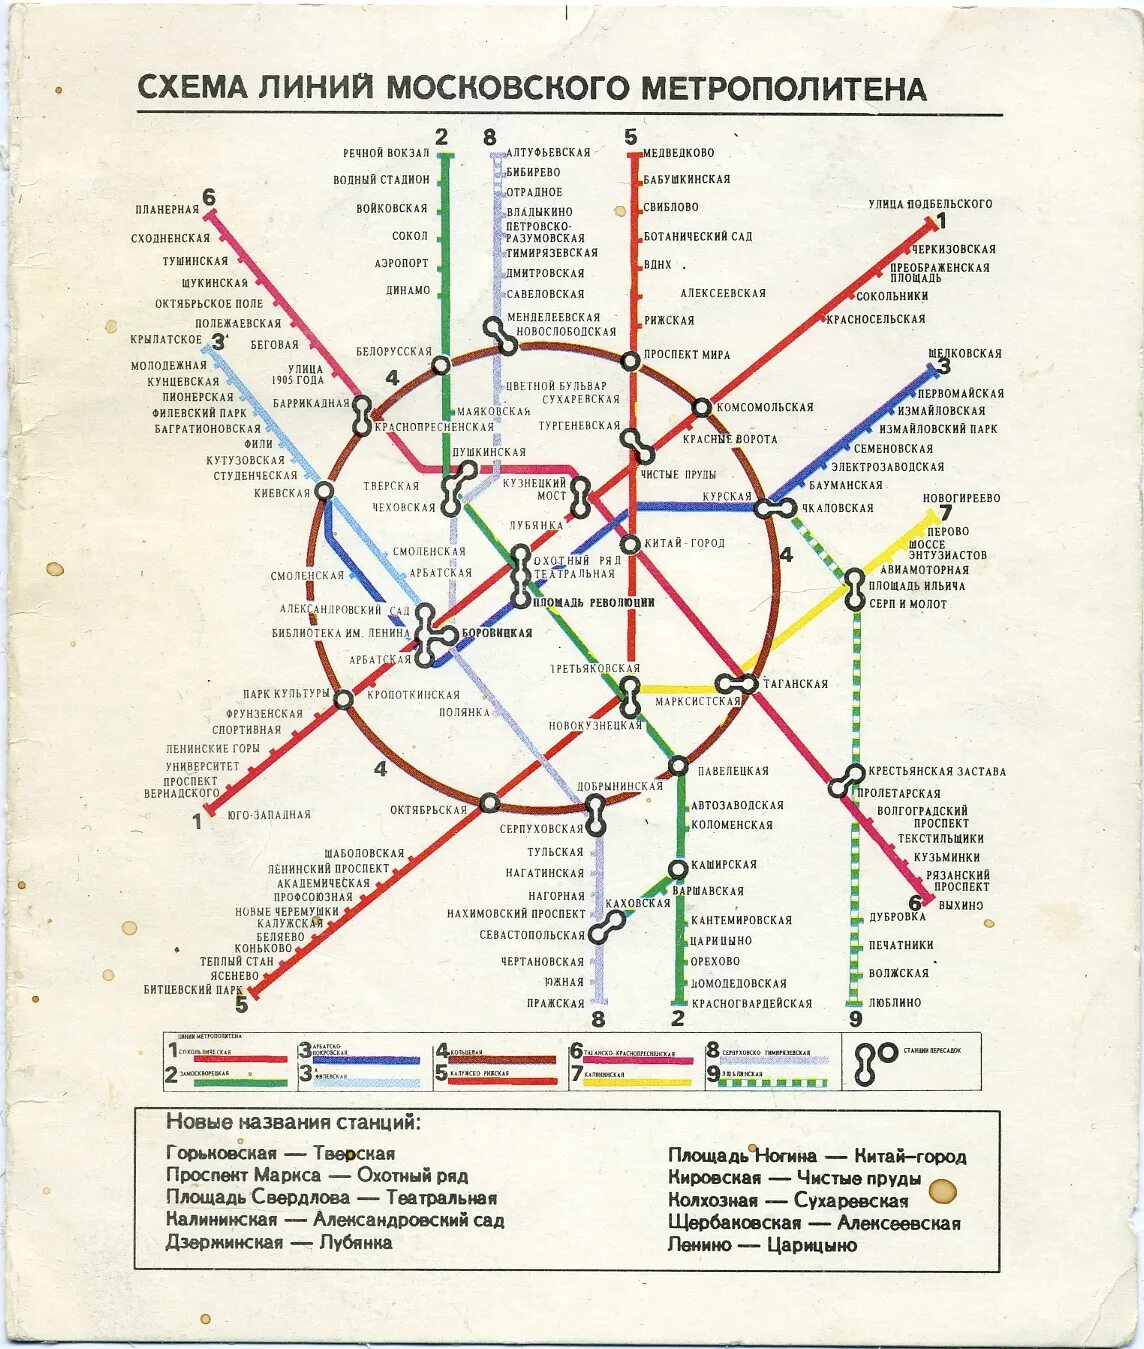 Название старого метро. Карта метрополитена Москва 1992 года. Схема линий Московского метрополитена. Карта метро 2000 года Москва. Карта Московского метрополитена 2000 года.